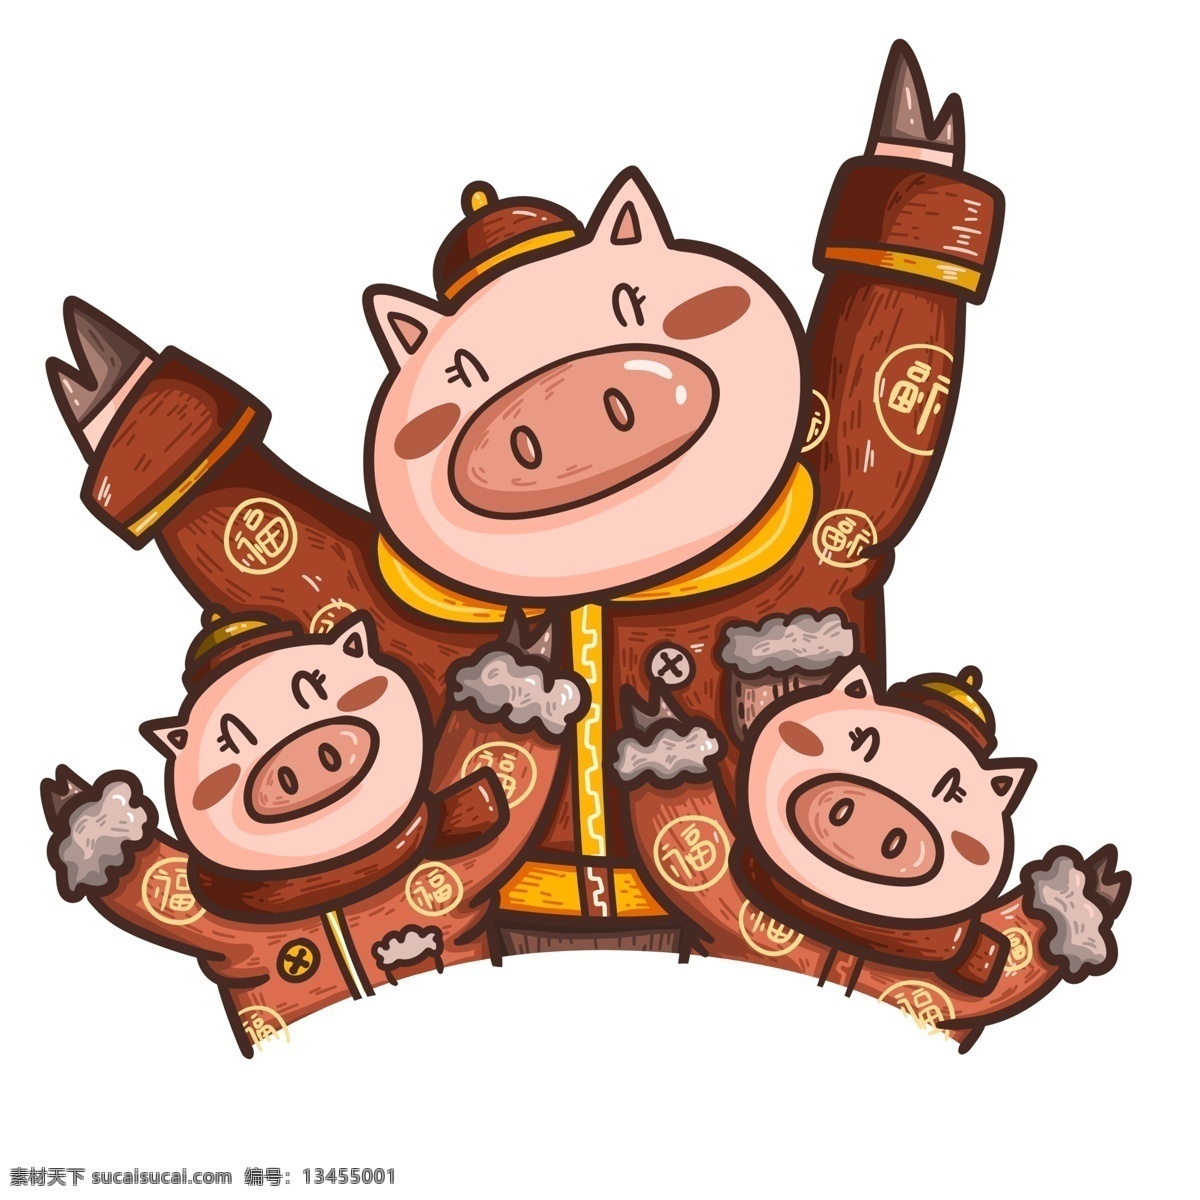 潮 漫 三 只 小 猪 拜年 卡通 插画 红色 喜庆 春节 潮漫 手绘 三只小猪 新春 新年 猪年 2019年 小猪形象 猪年形象